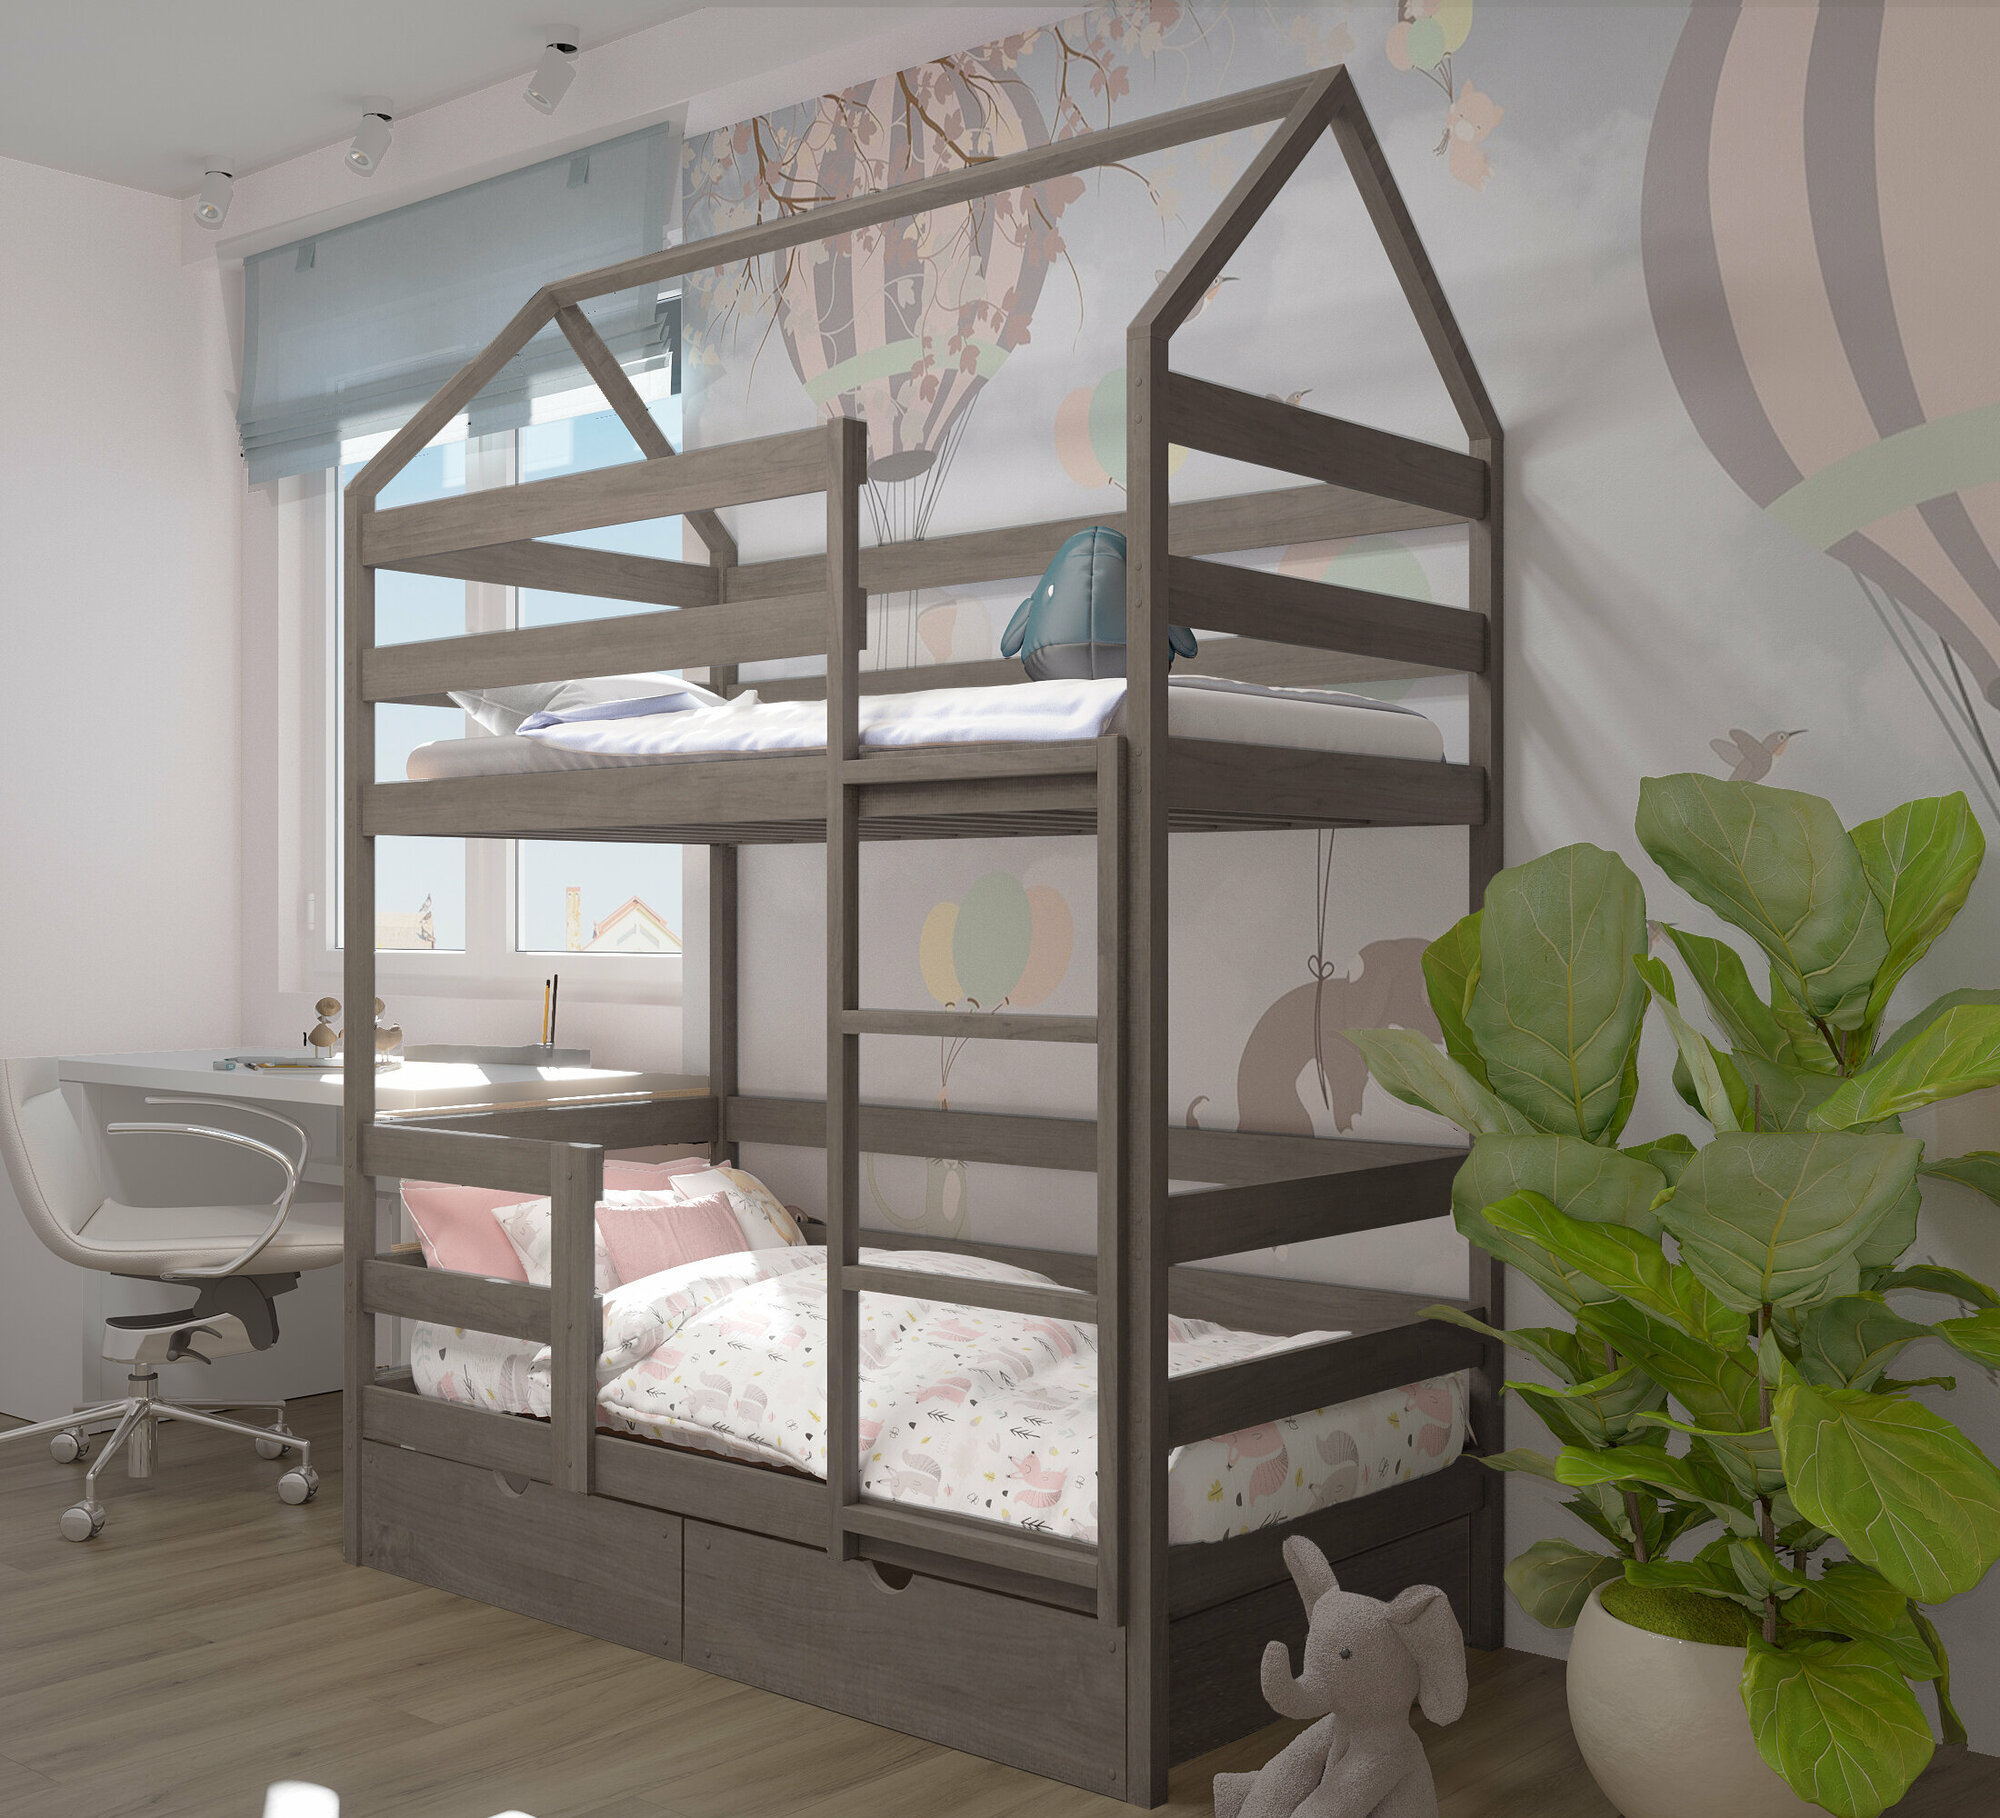 Кровать детская, подростковая "Двухъярусная-домик", спальное место 160х80, в комплекте с выкатными ящиками, масло "Асфальт", из массива